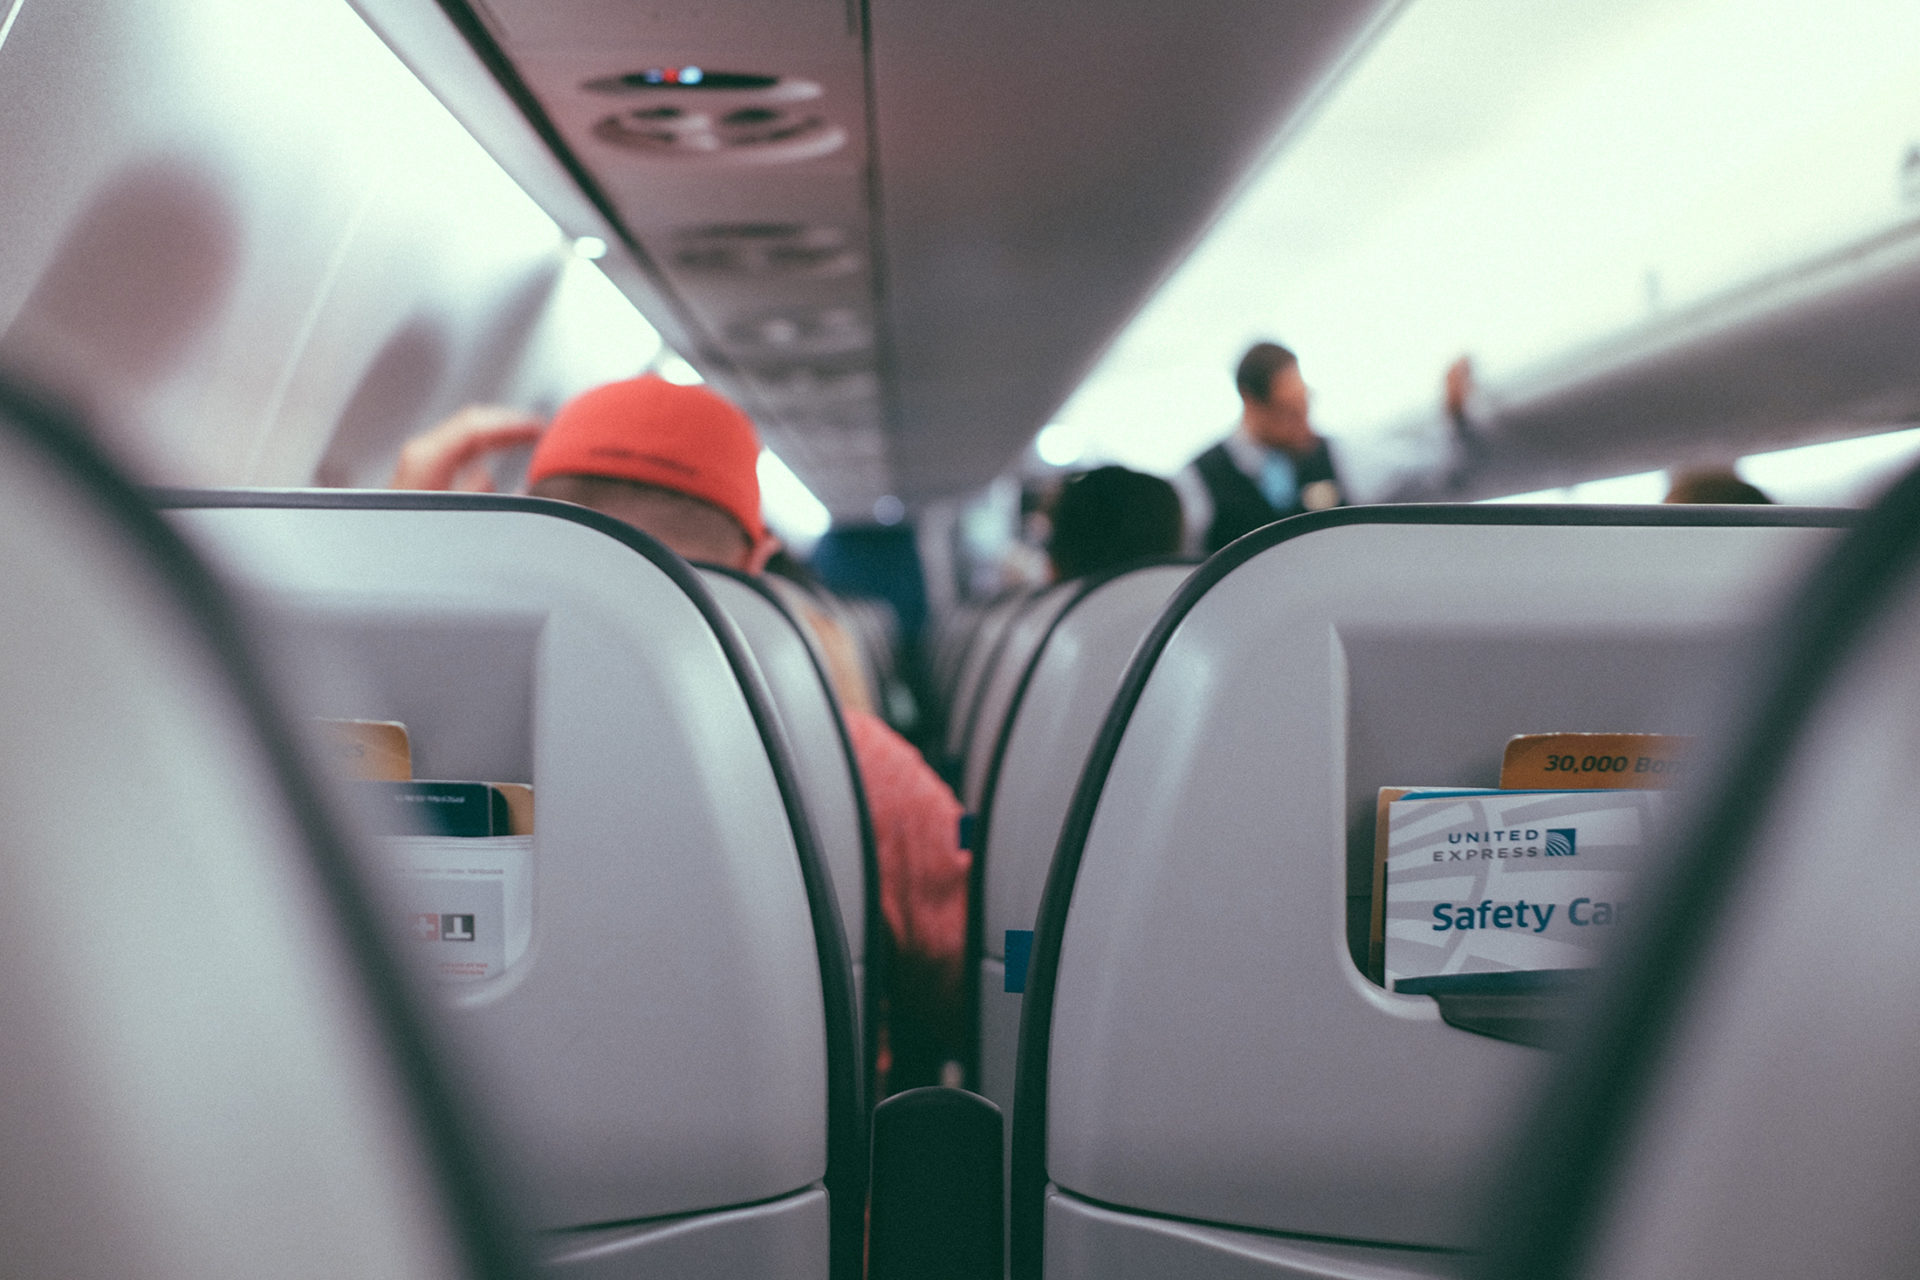 10 conseils pour voyager en avion plus tranquillement